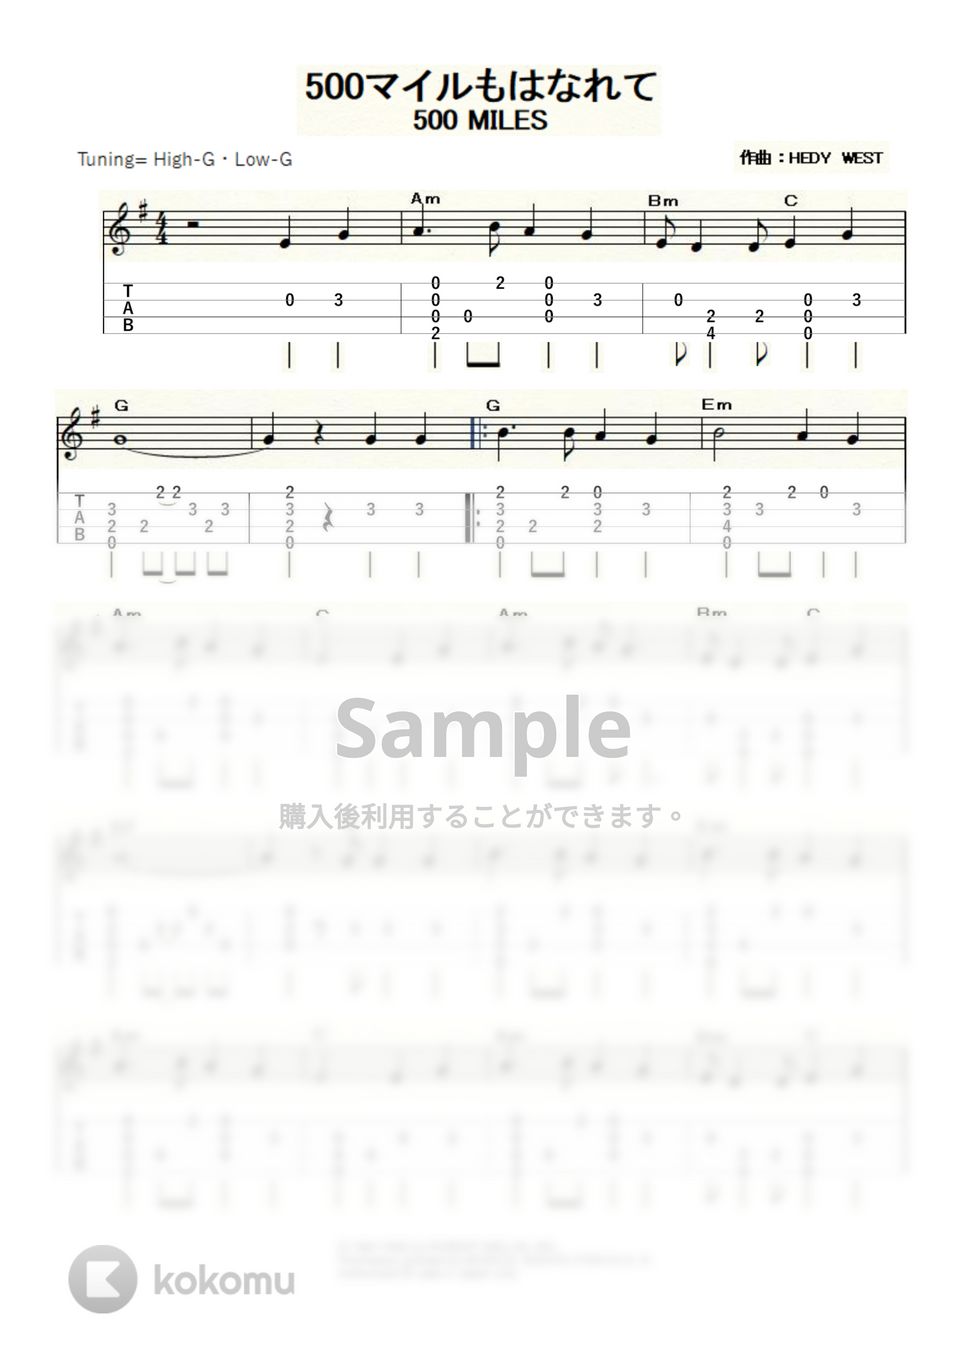 ピーター・ポール&マリー - 500miles (ｳｸﾚﾚｿﾛ / High-G・Low-G / 初級～中級) by ukulelepapa